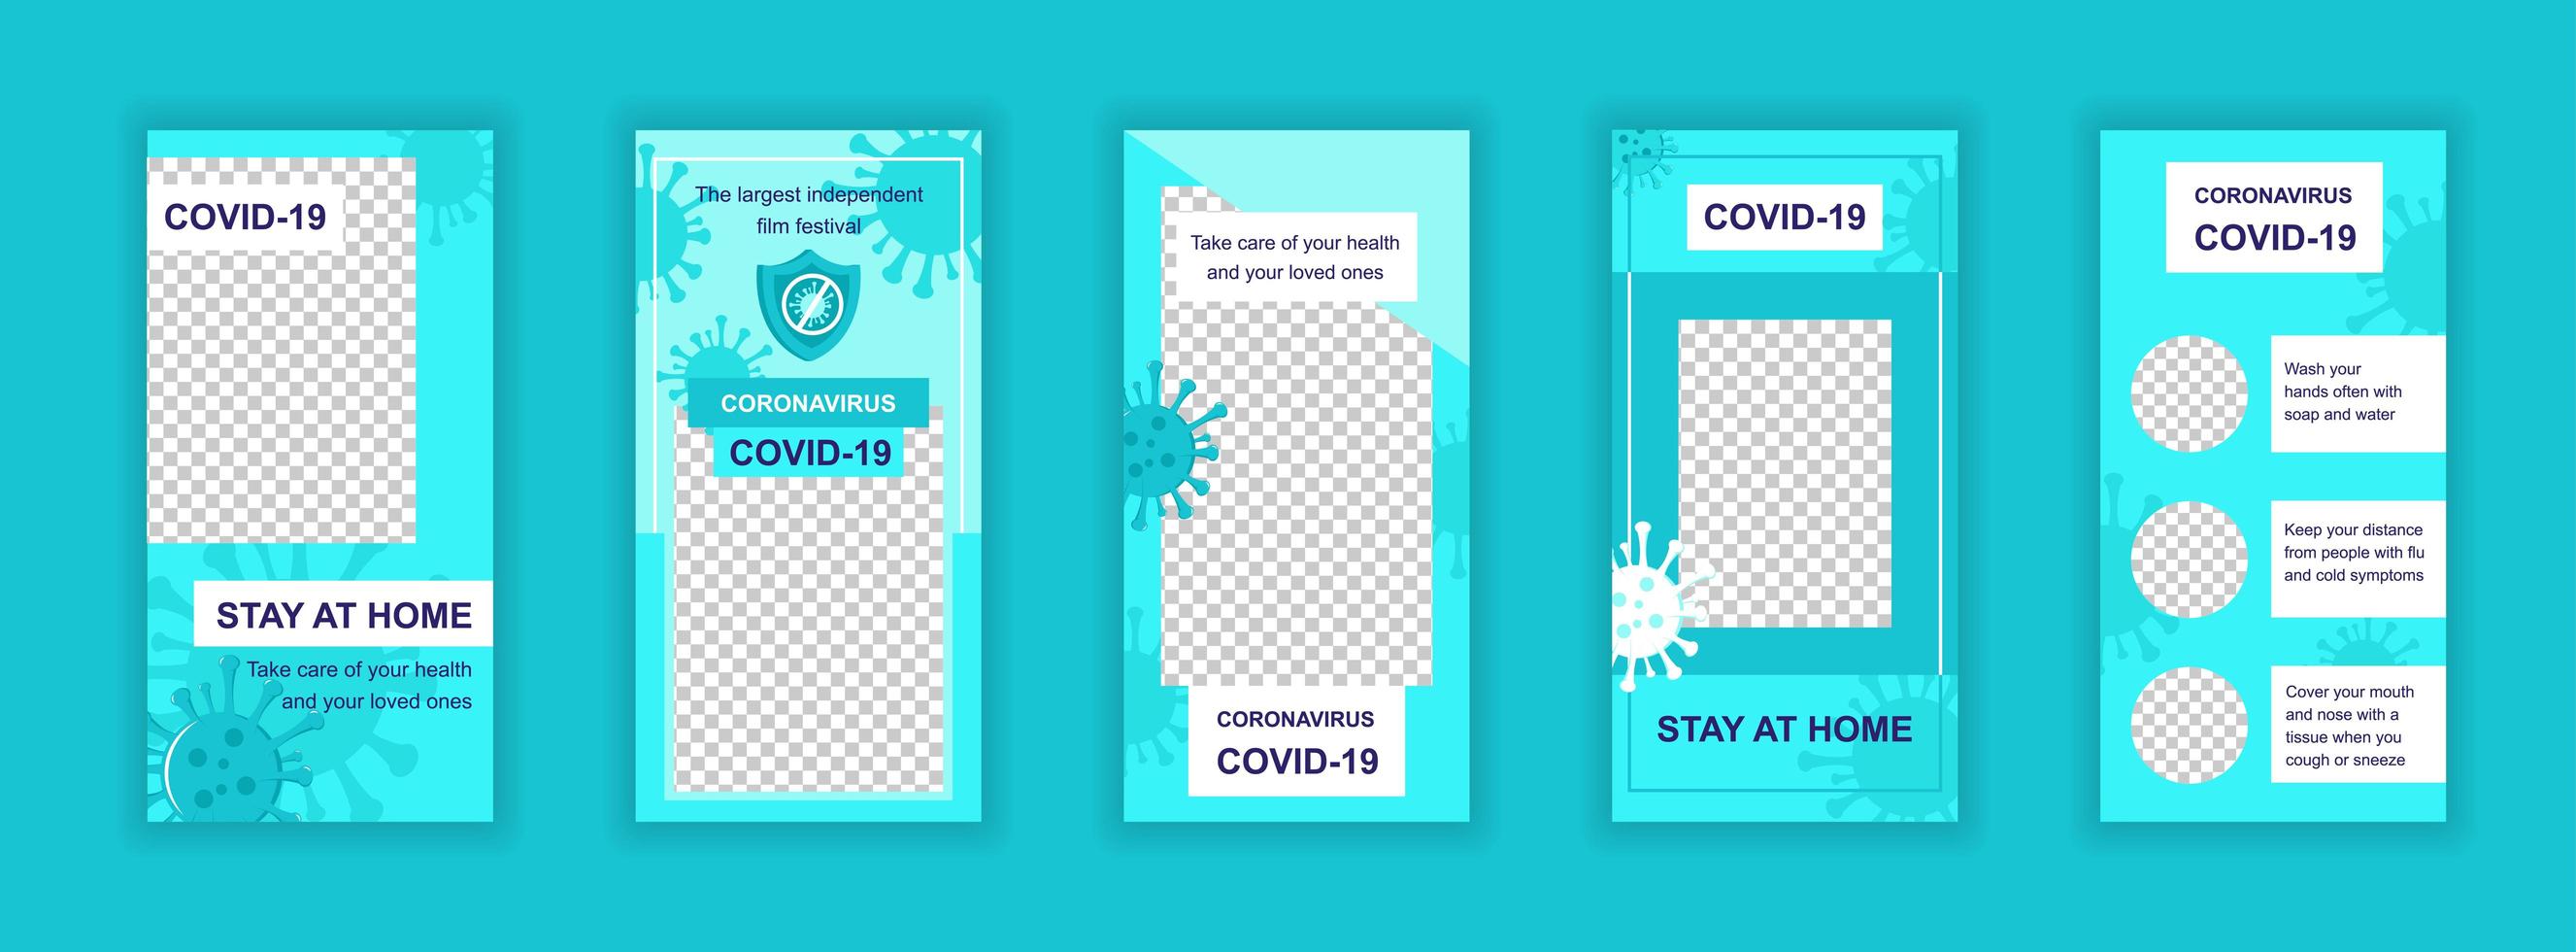 Coronavirus Covid-19 bearbeitbare Vorlagen für soziale Medien vektor